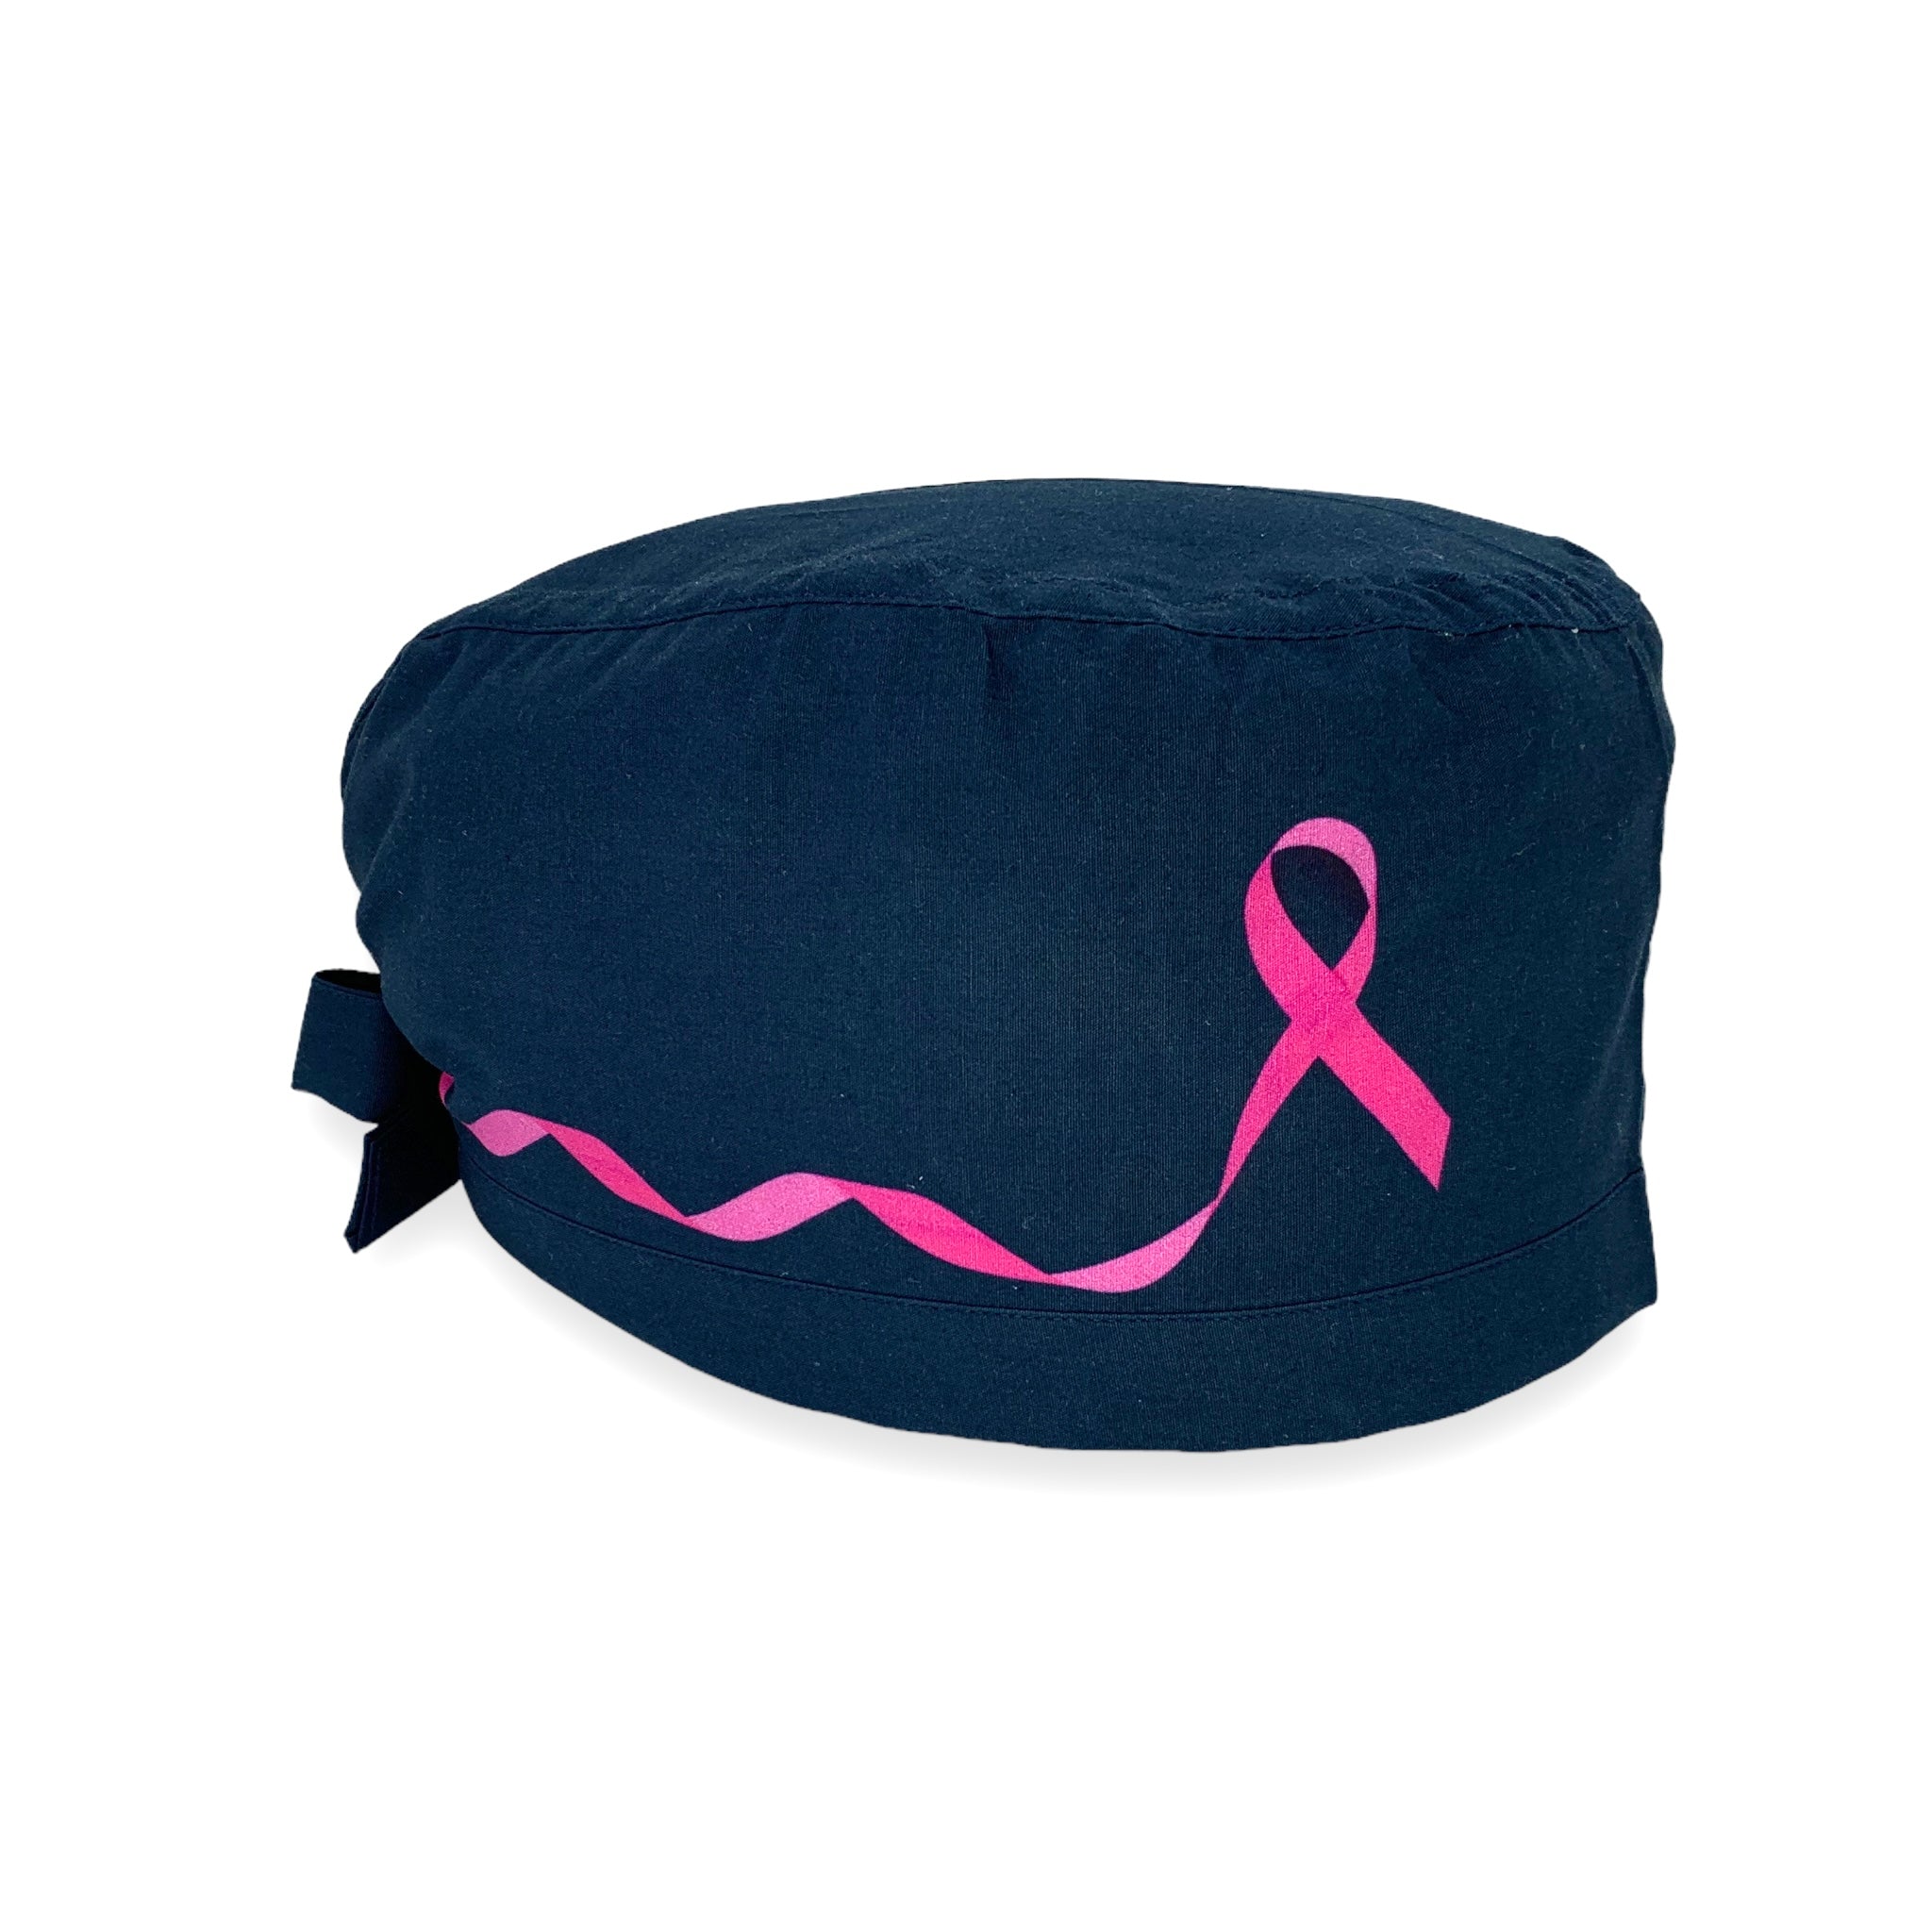 Cuffietta chirurgica blu scuro con fiocco rosa su entrambi i lati, simbolo di lotta e impegno contro il cancro al seno